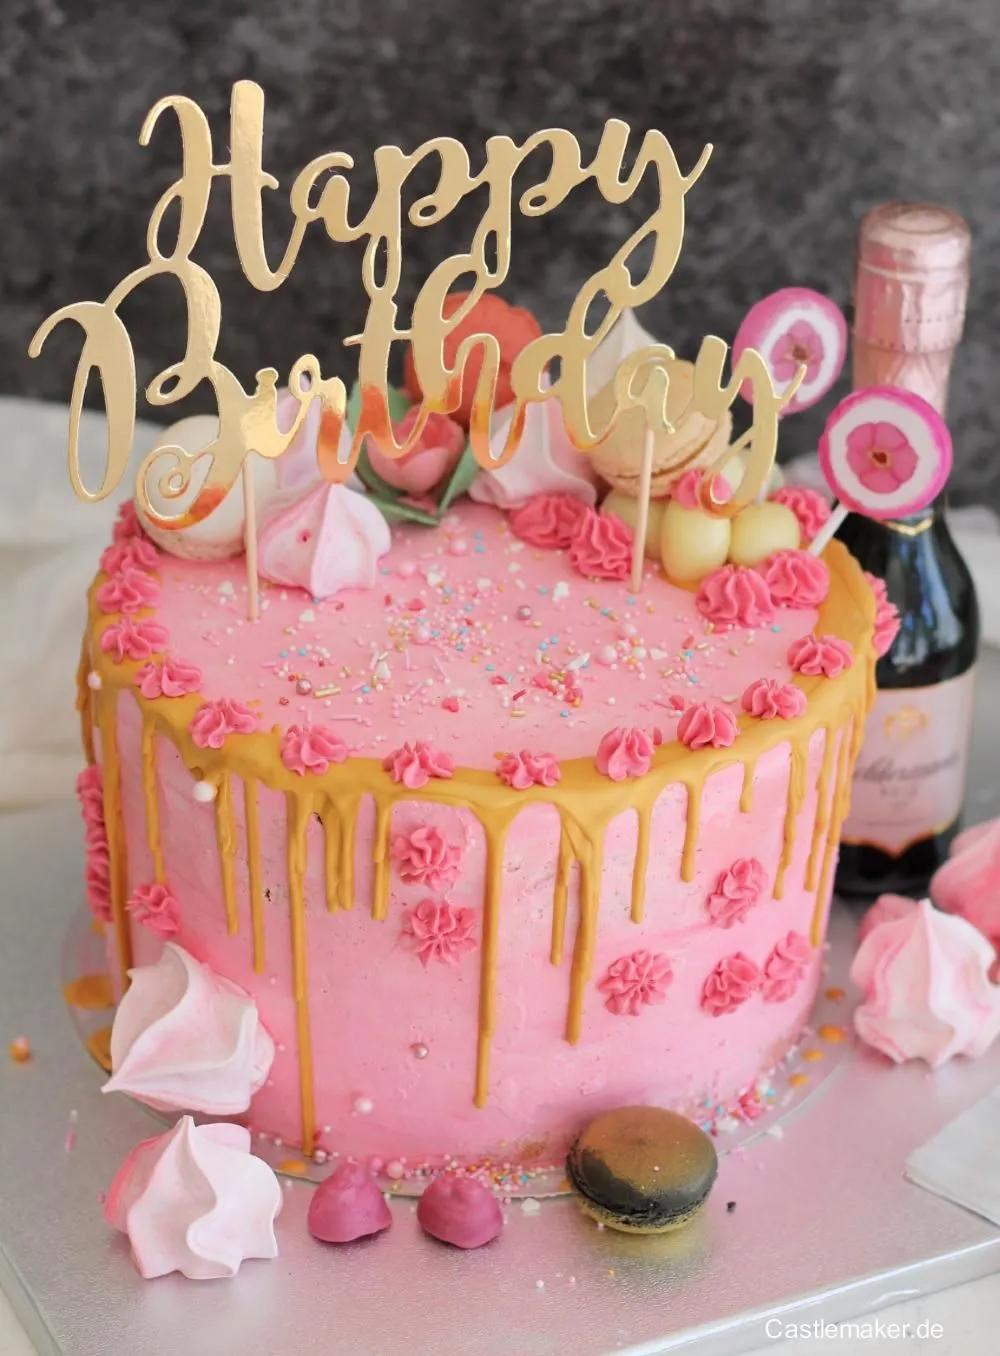 Fruchtige Himbeertorte mit goldenem Drip - Geburtstagstorte in rosa ...